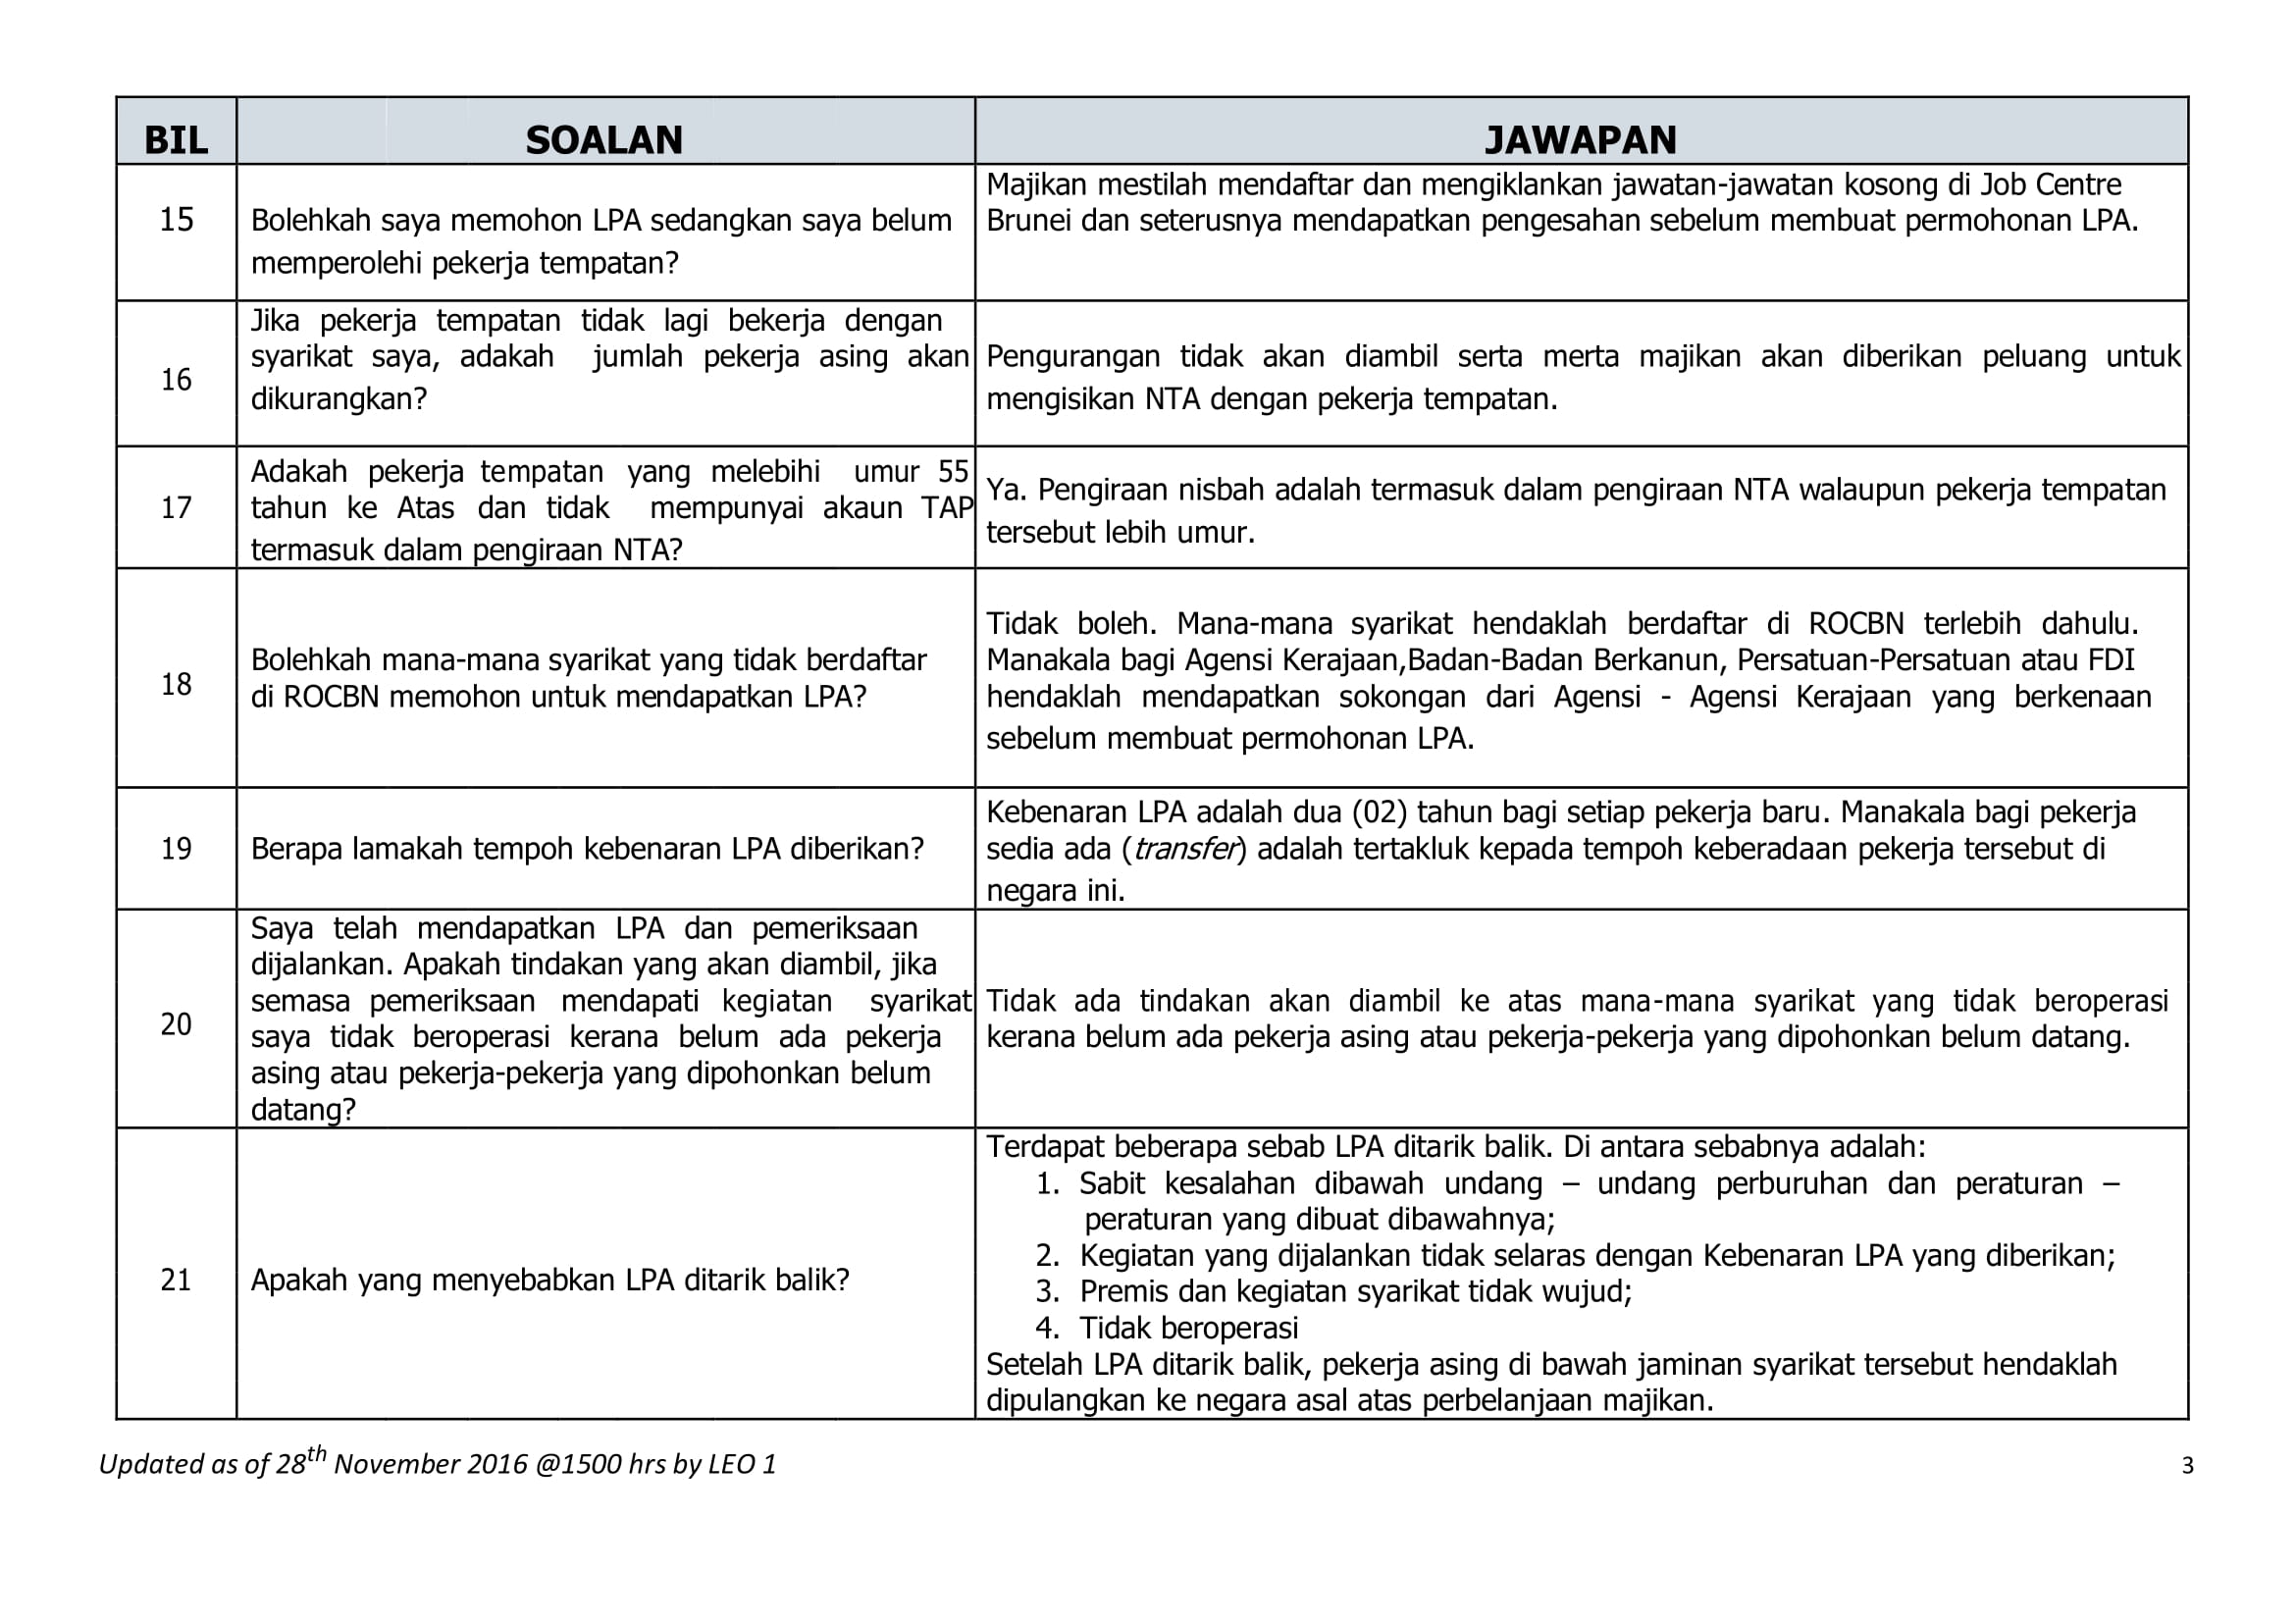 FAQ malay version-3.jpg